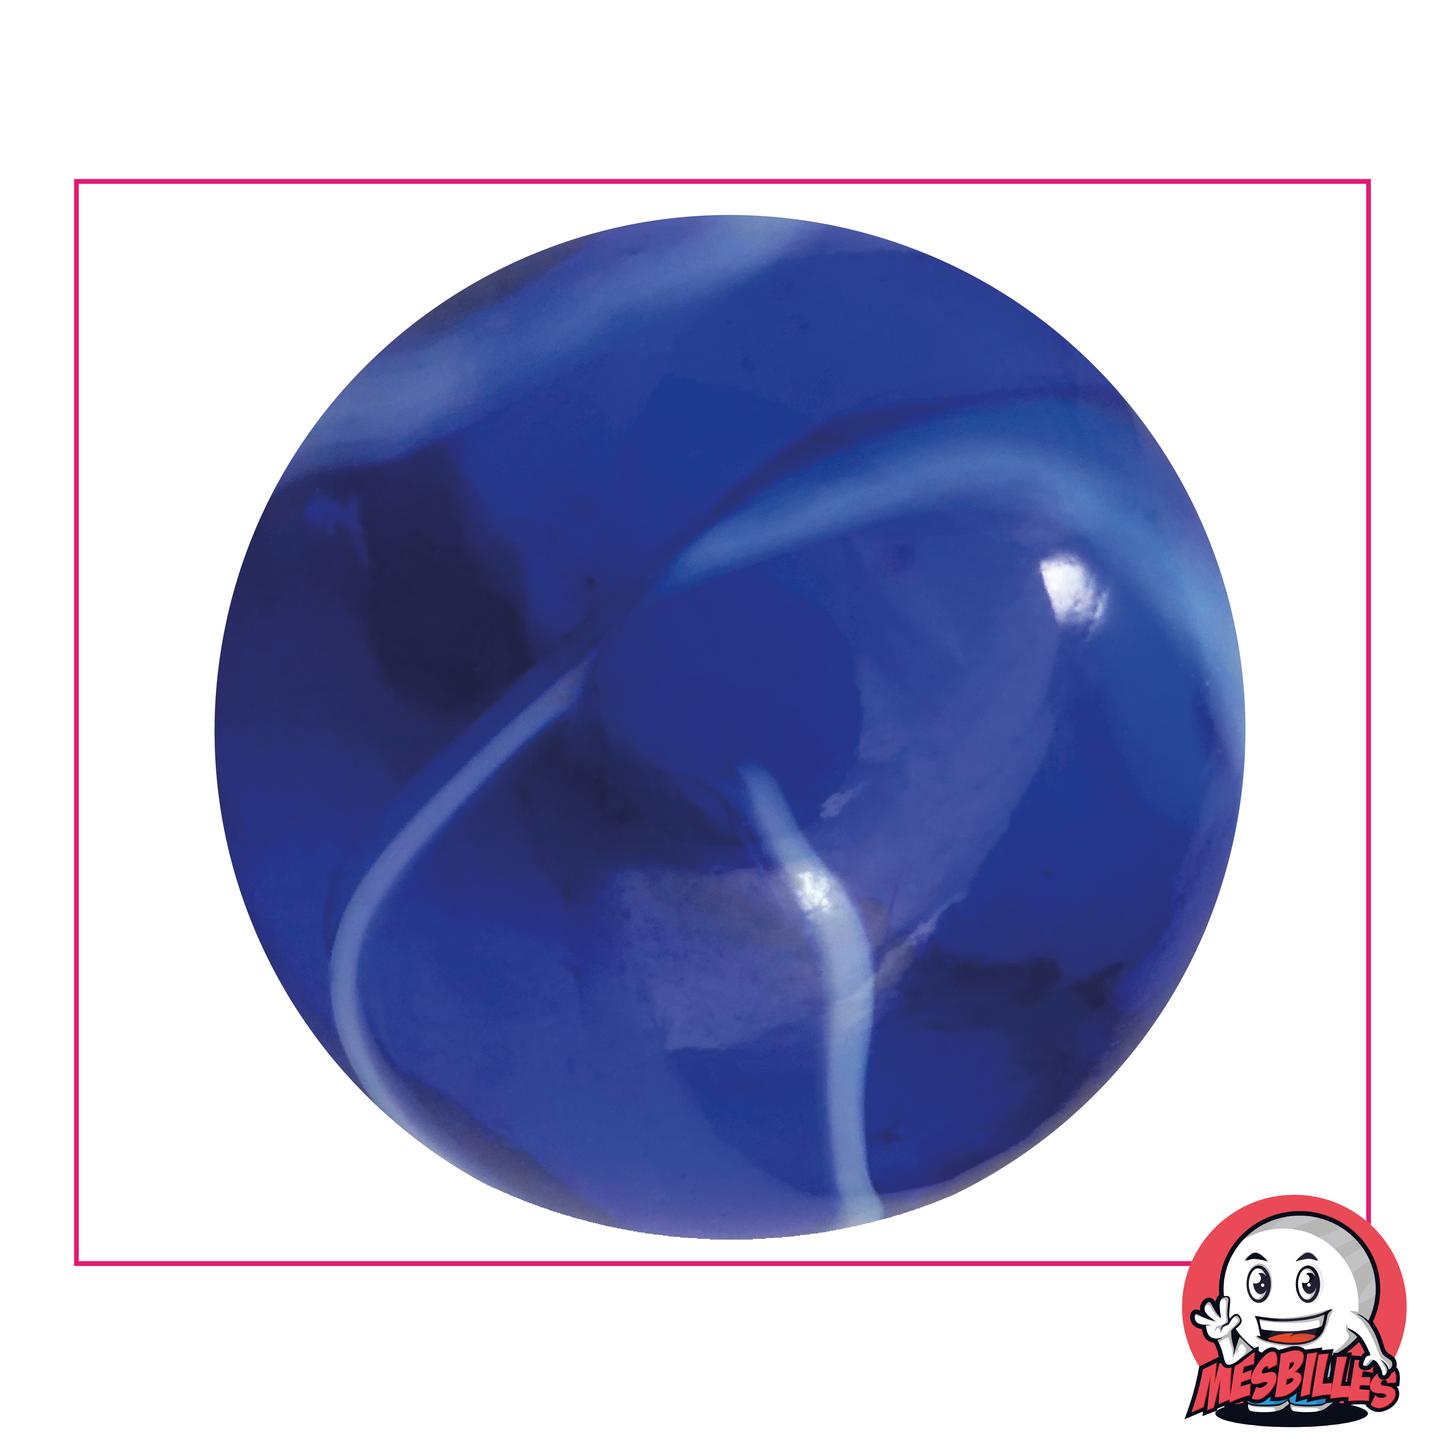 Bille Spot 50 mm - Verre Translucide Bleu strié de Blanc - MesBilles